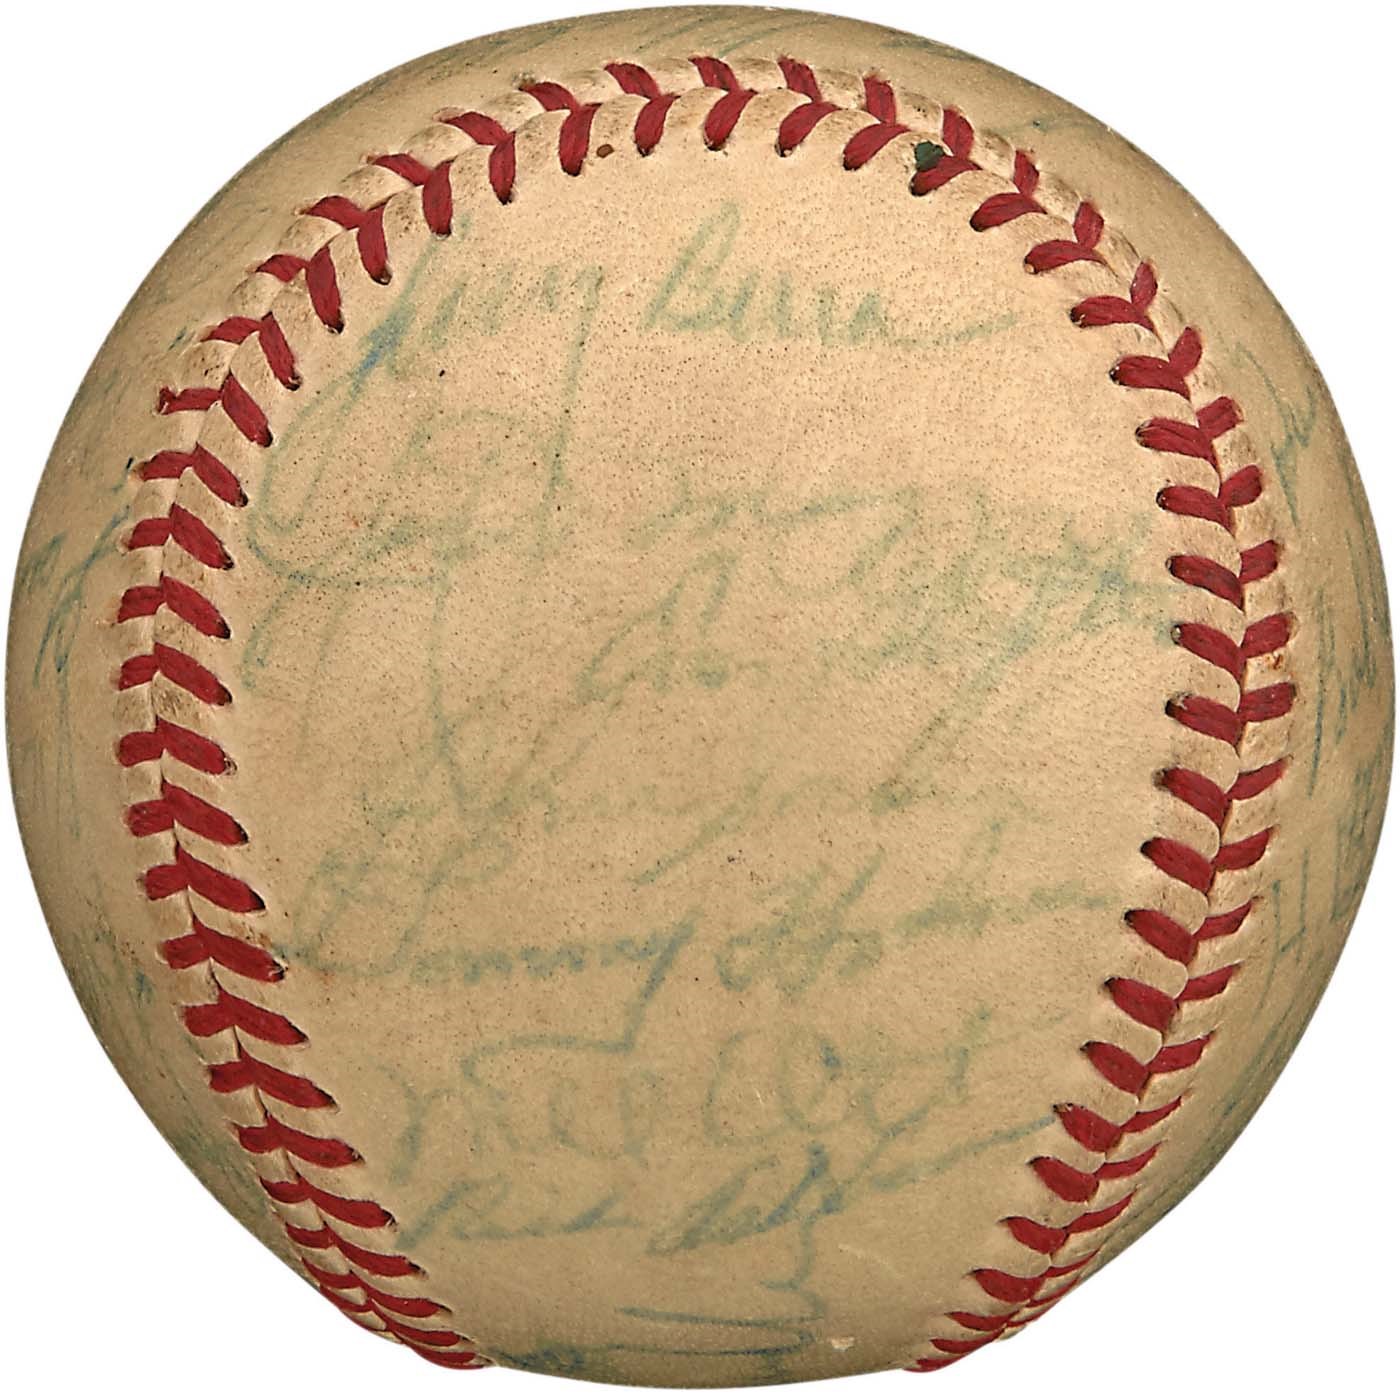 Baseball Autographs - 1948 All-Star Team Signed Baseball w/Mel Ott (PSA & SGC)